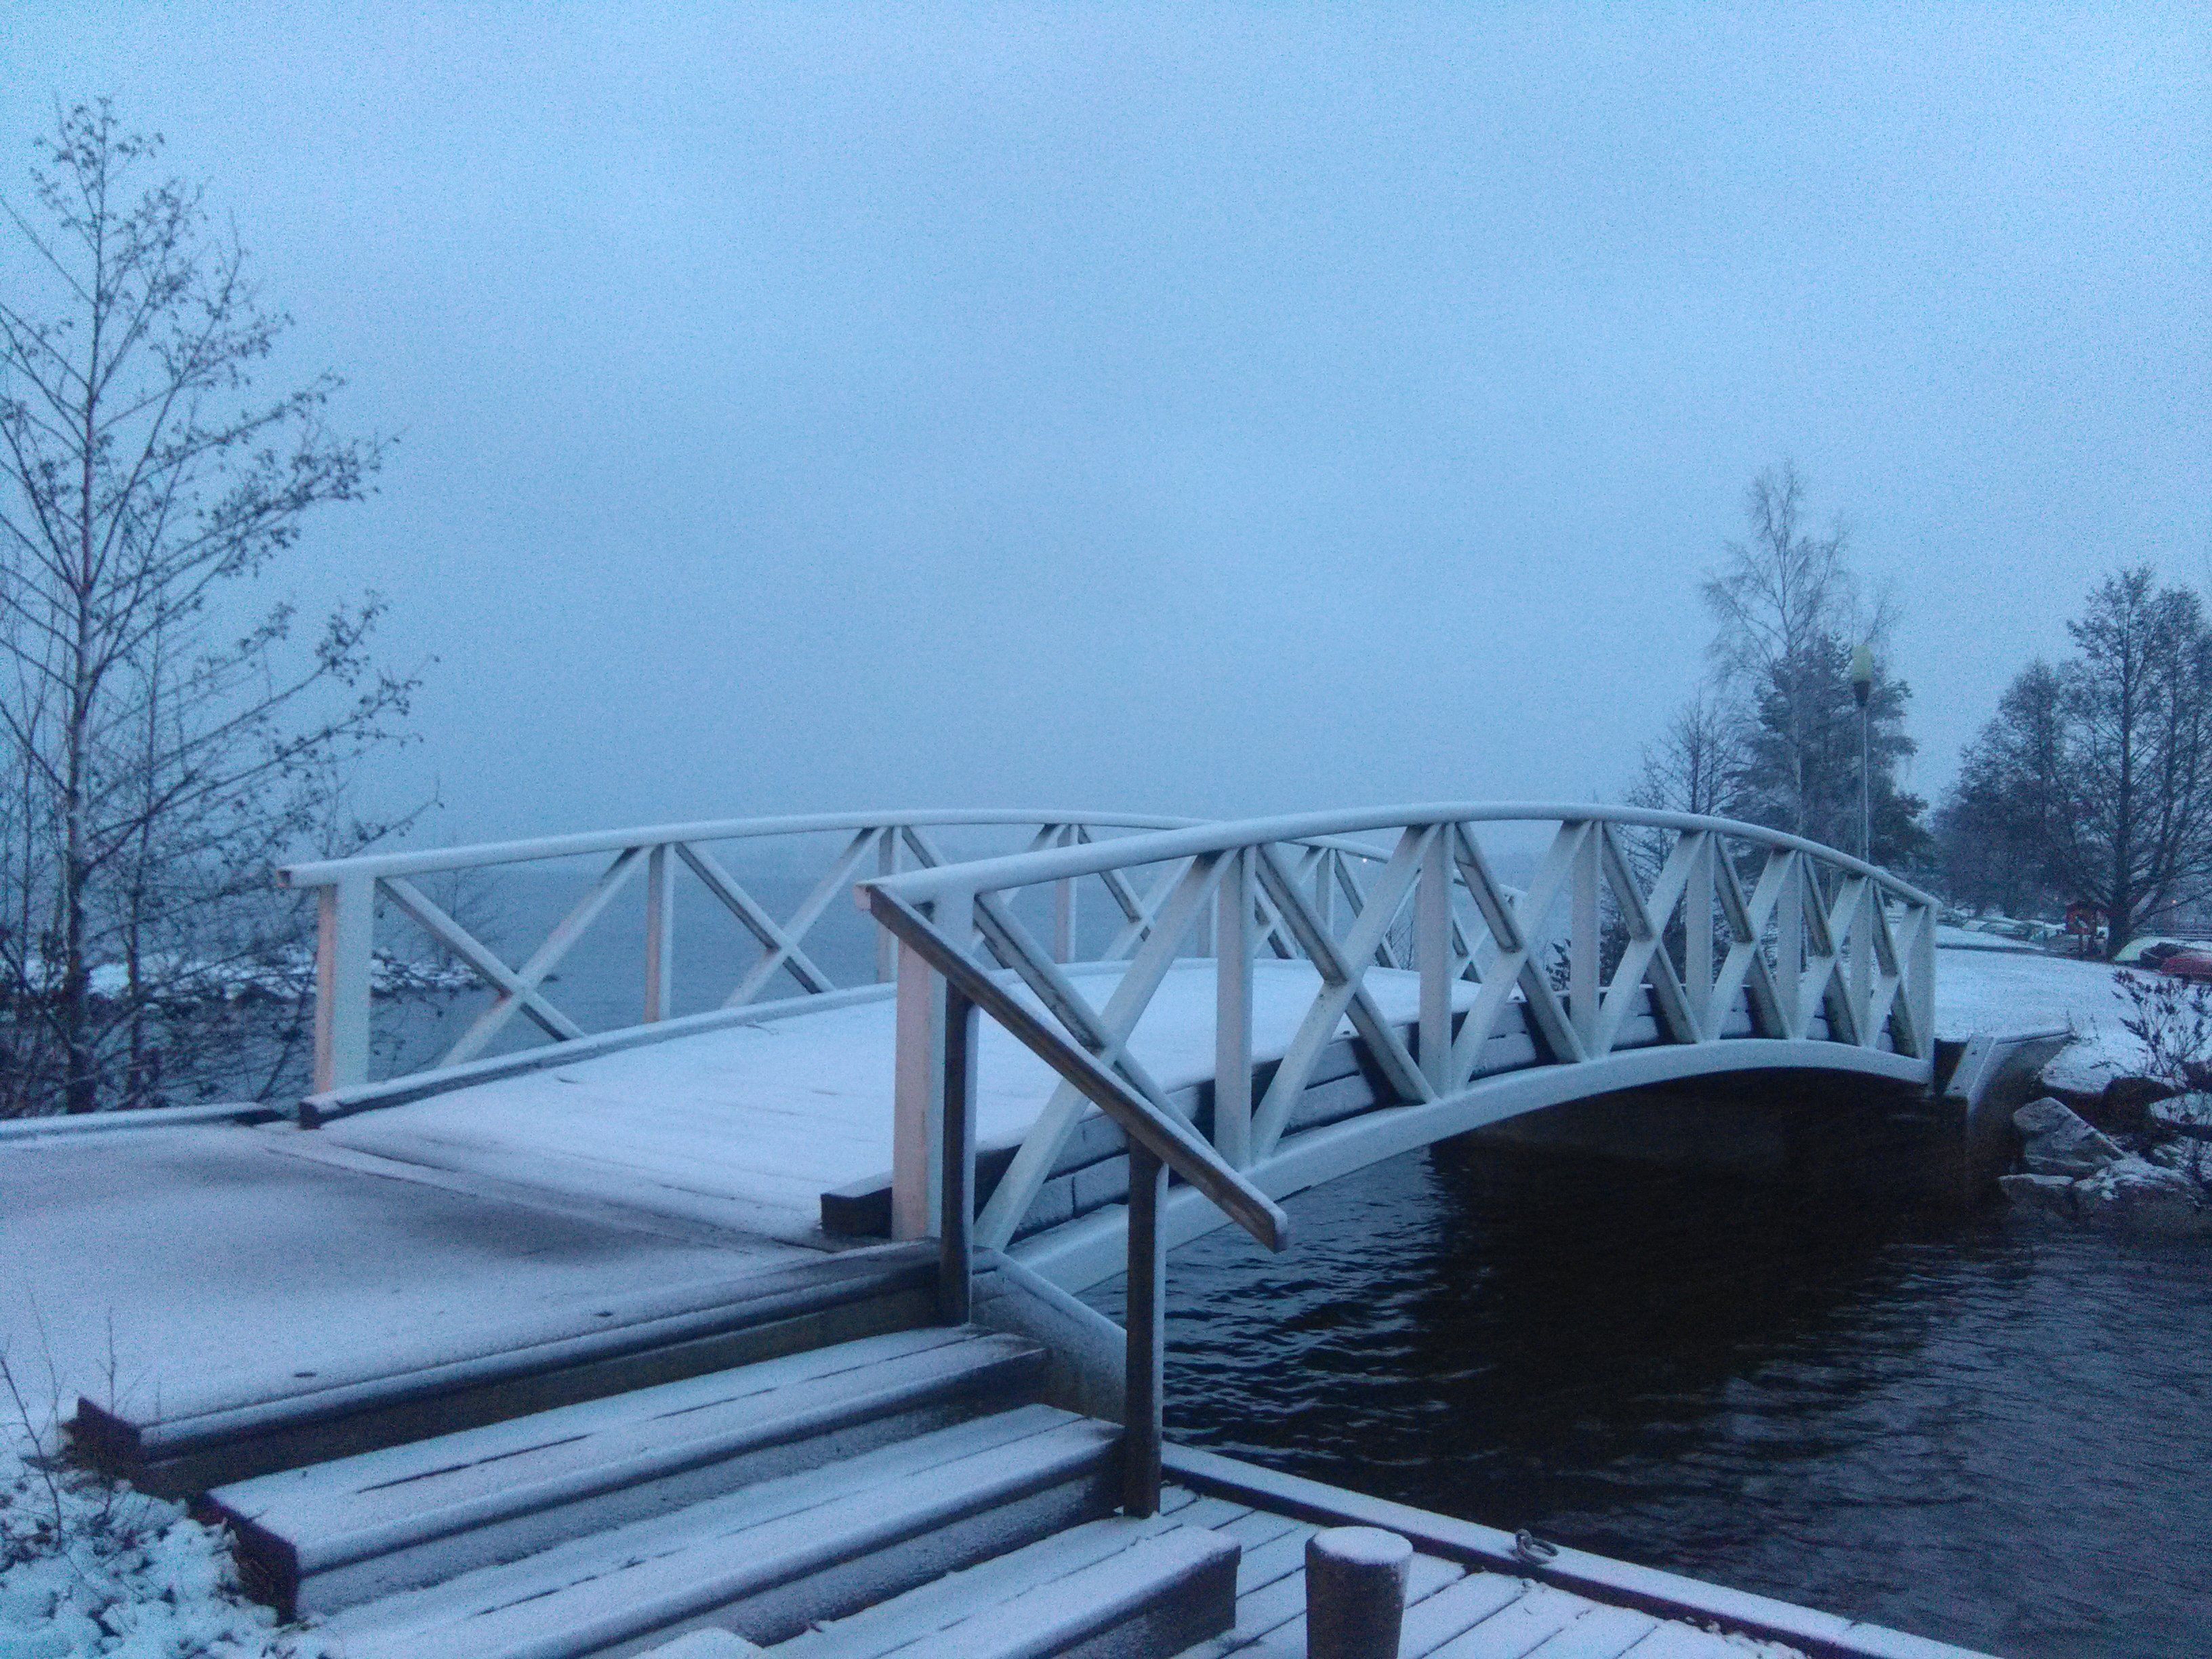 Bridge in light snow cover. (158/365)